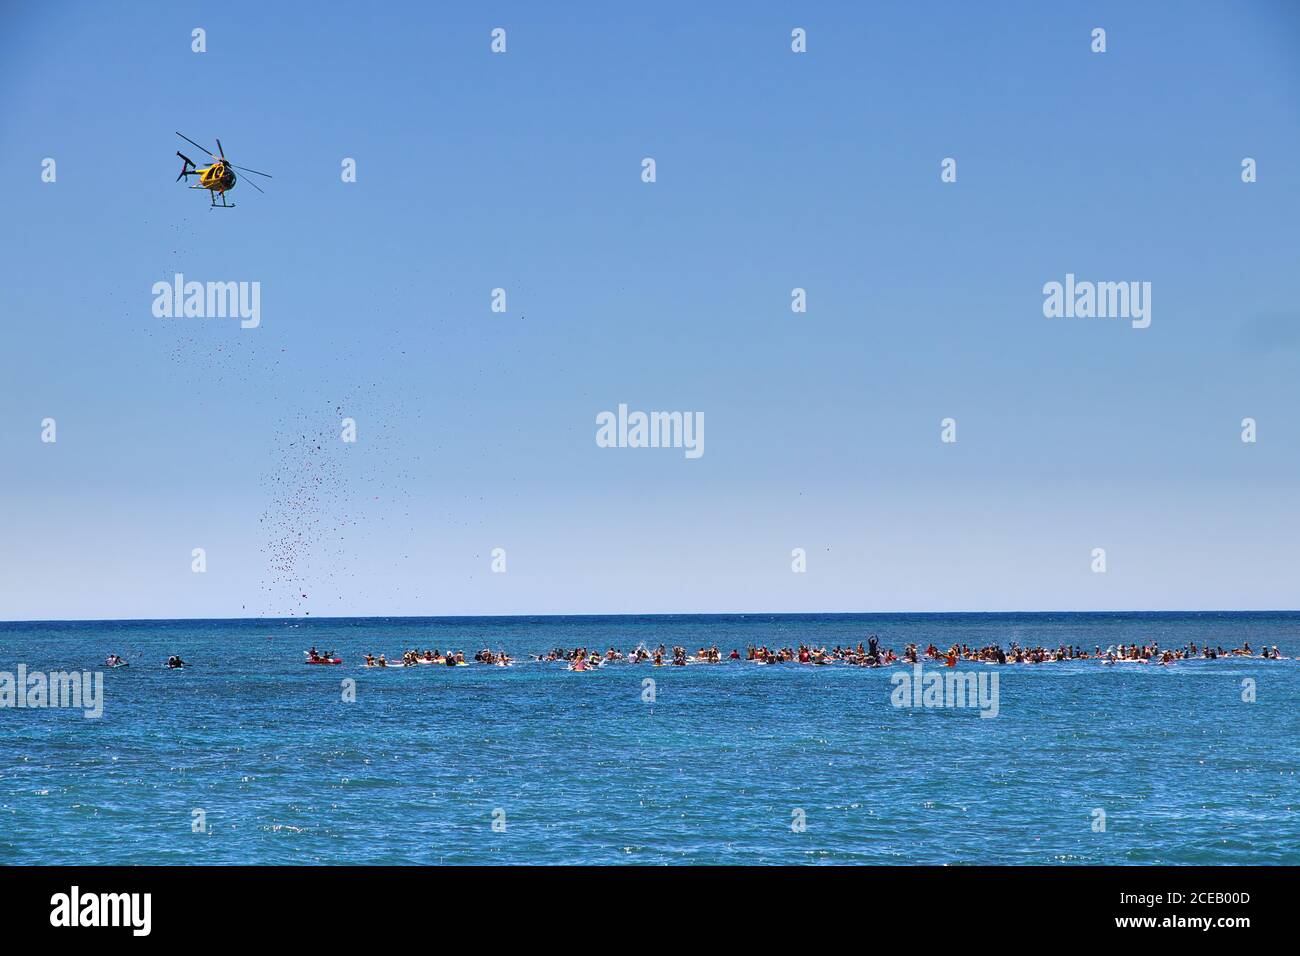 Un hélicoptère larguer des fleurs sur des surfeurs éloignés lors d'une cérémonie de célébration de la vie. Banque D'Images